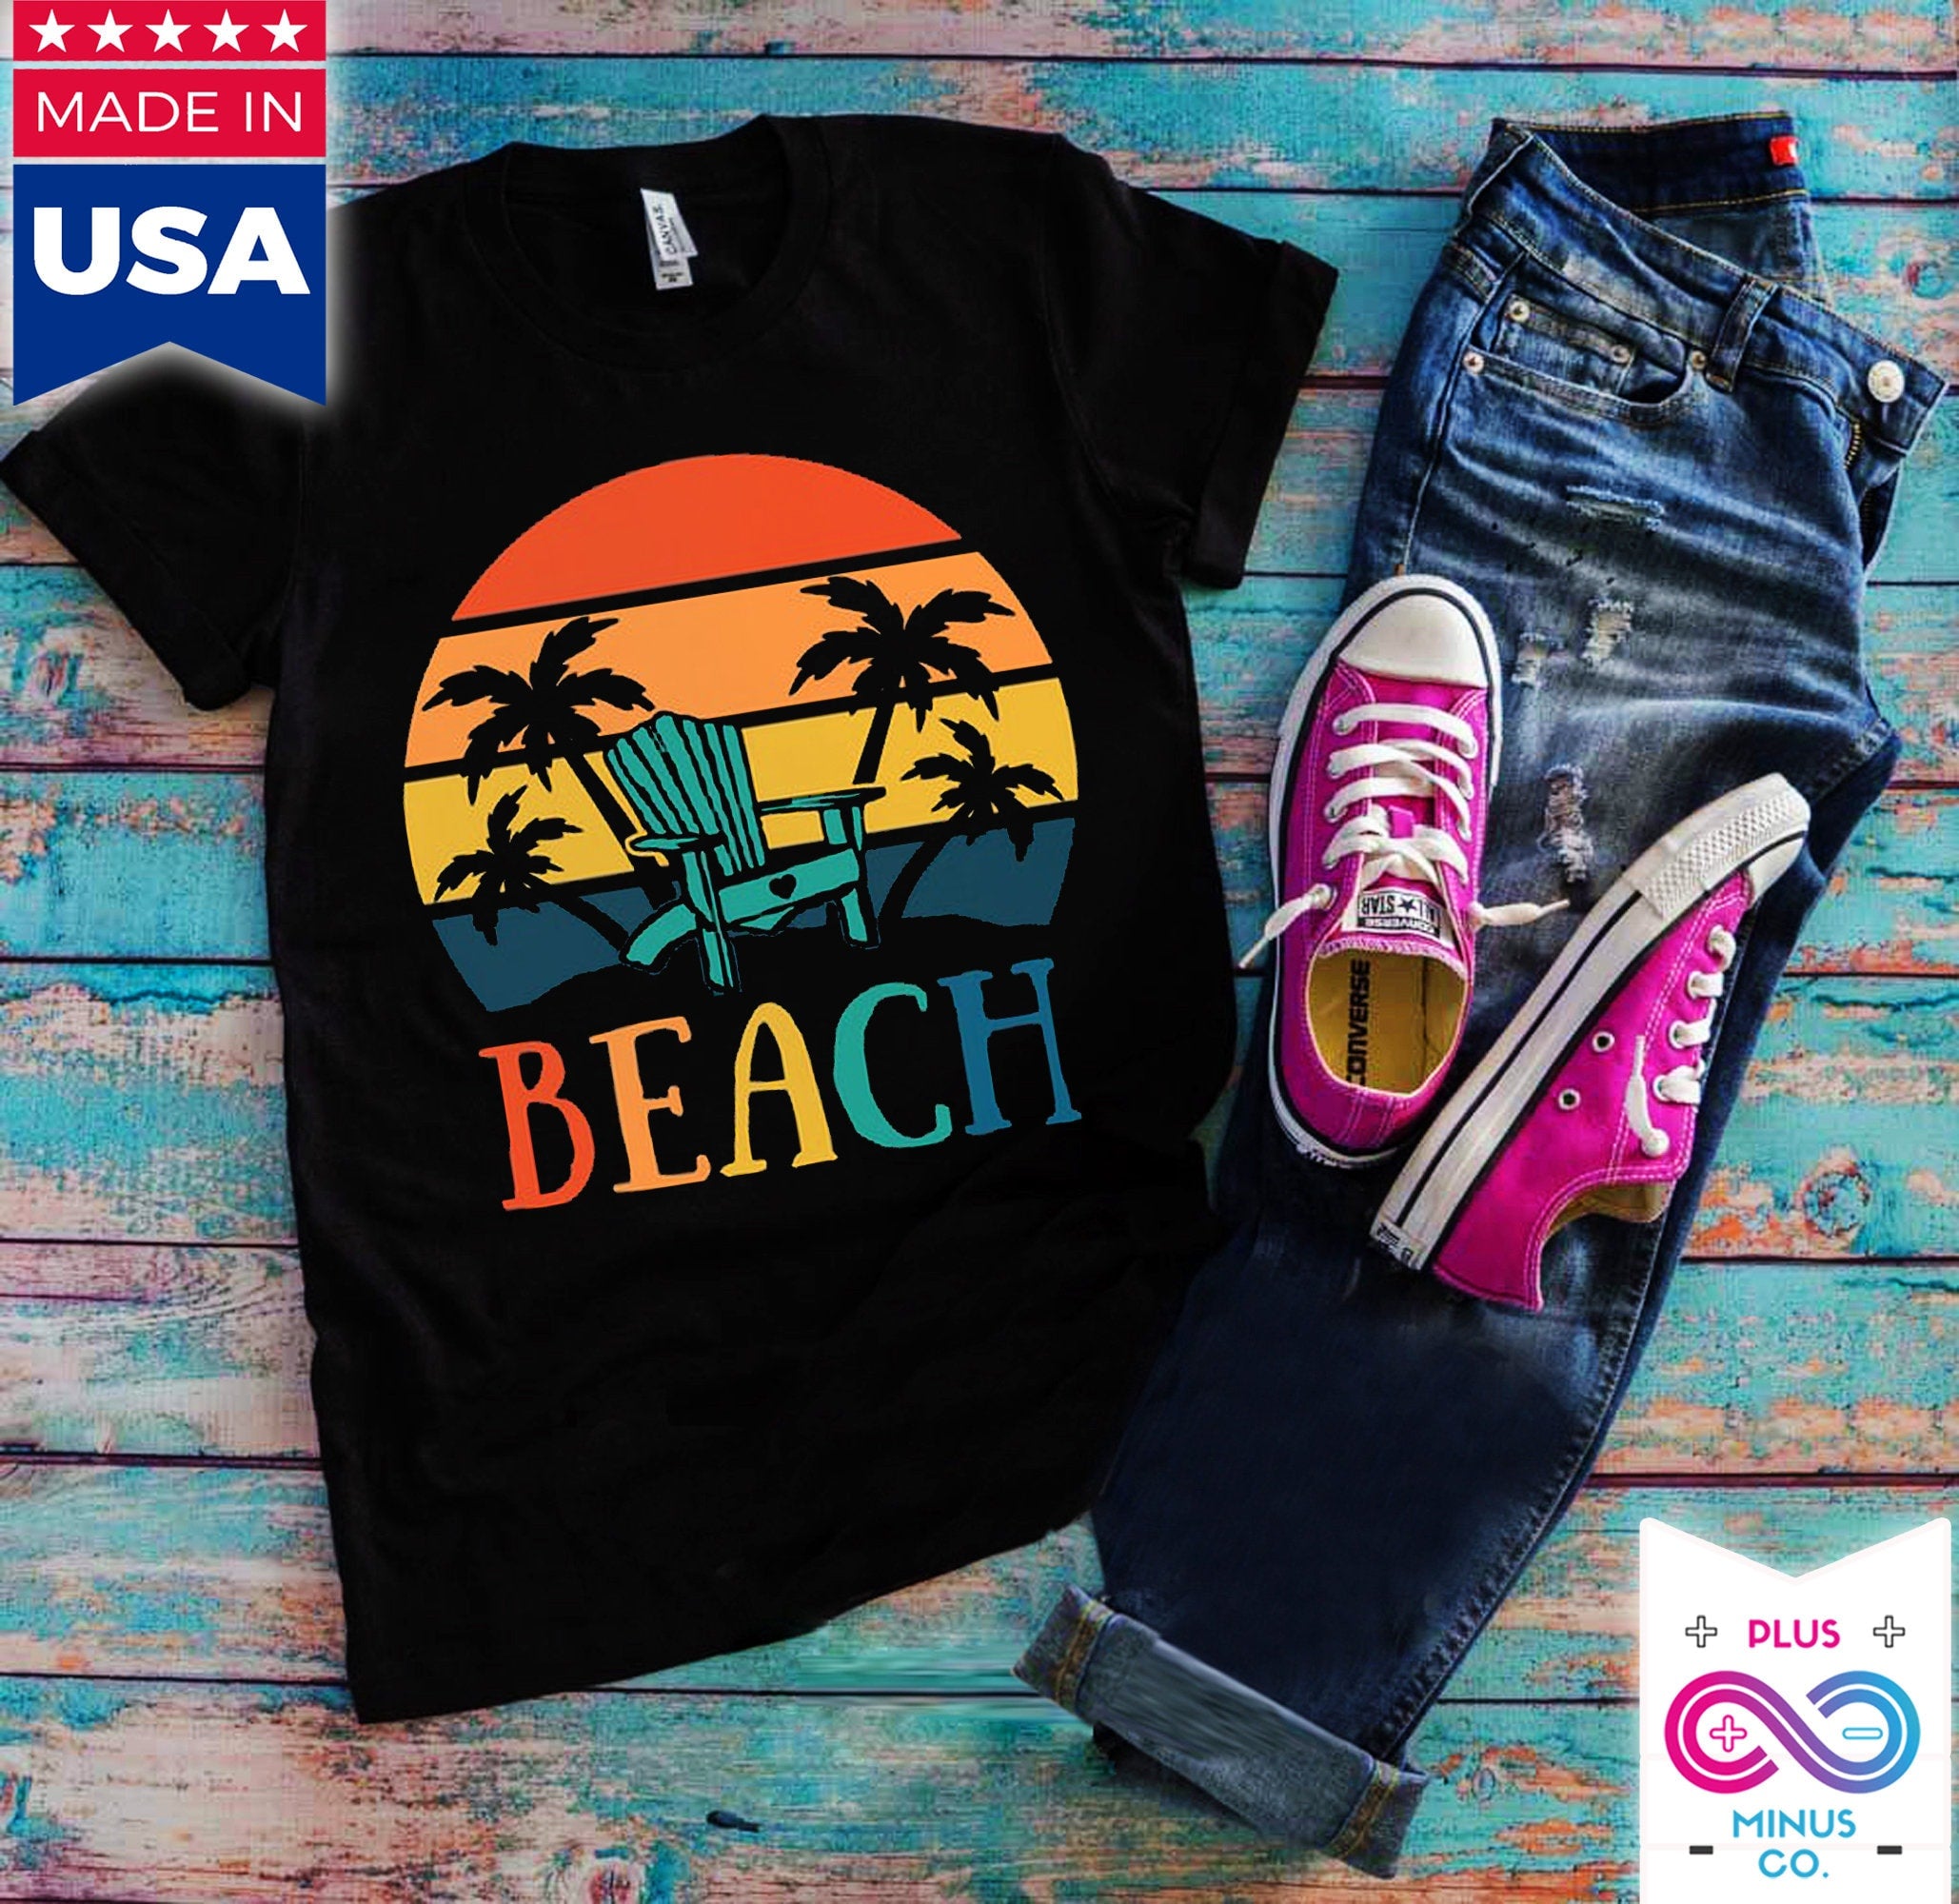 Palme da spiaggia | Magliette retrò tramonto, maglietta Vita sull'isola | Camicia estiva | Camicia per le vacanze - plusminusco.com